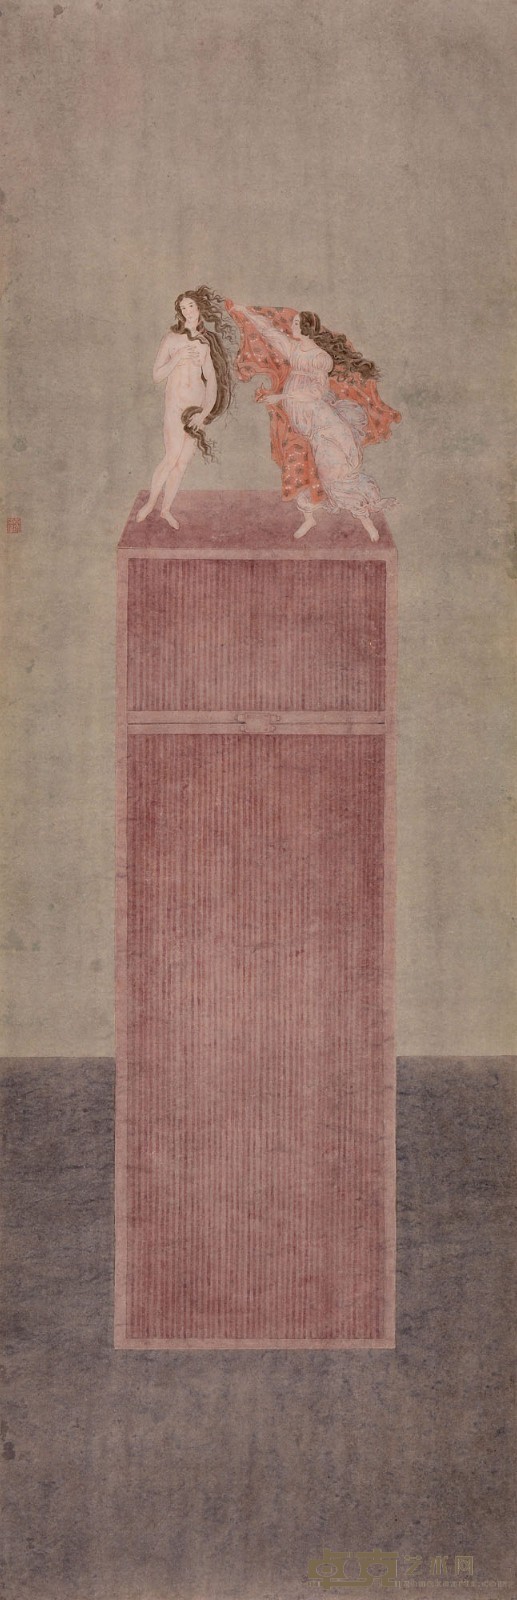 杜亚璇    触·春之三  纸本设色  44.3厘米乘138.8厘米   .jpg